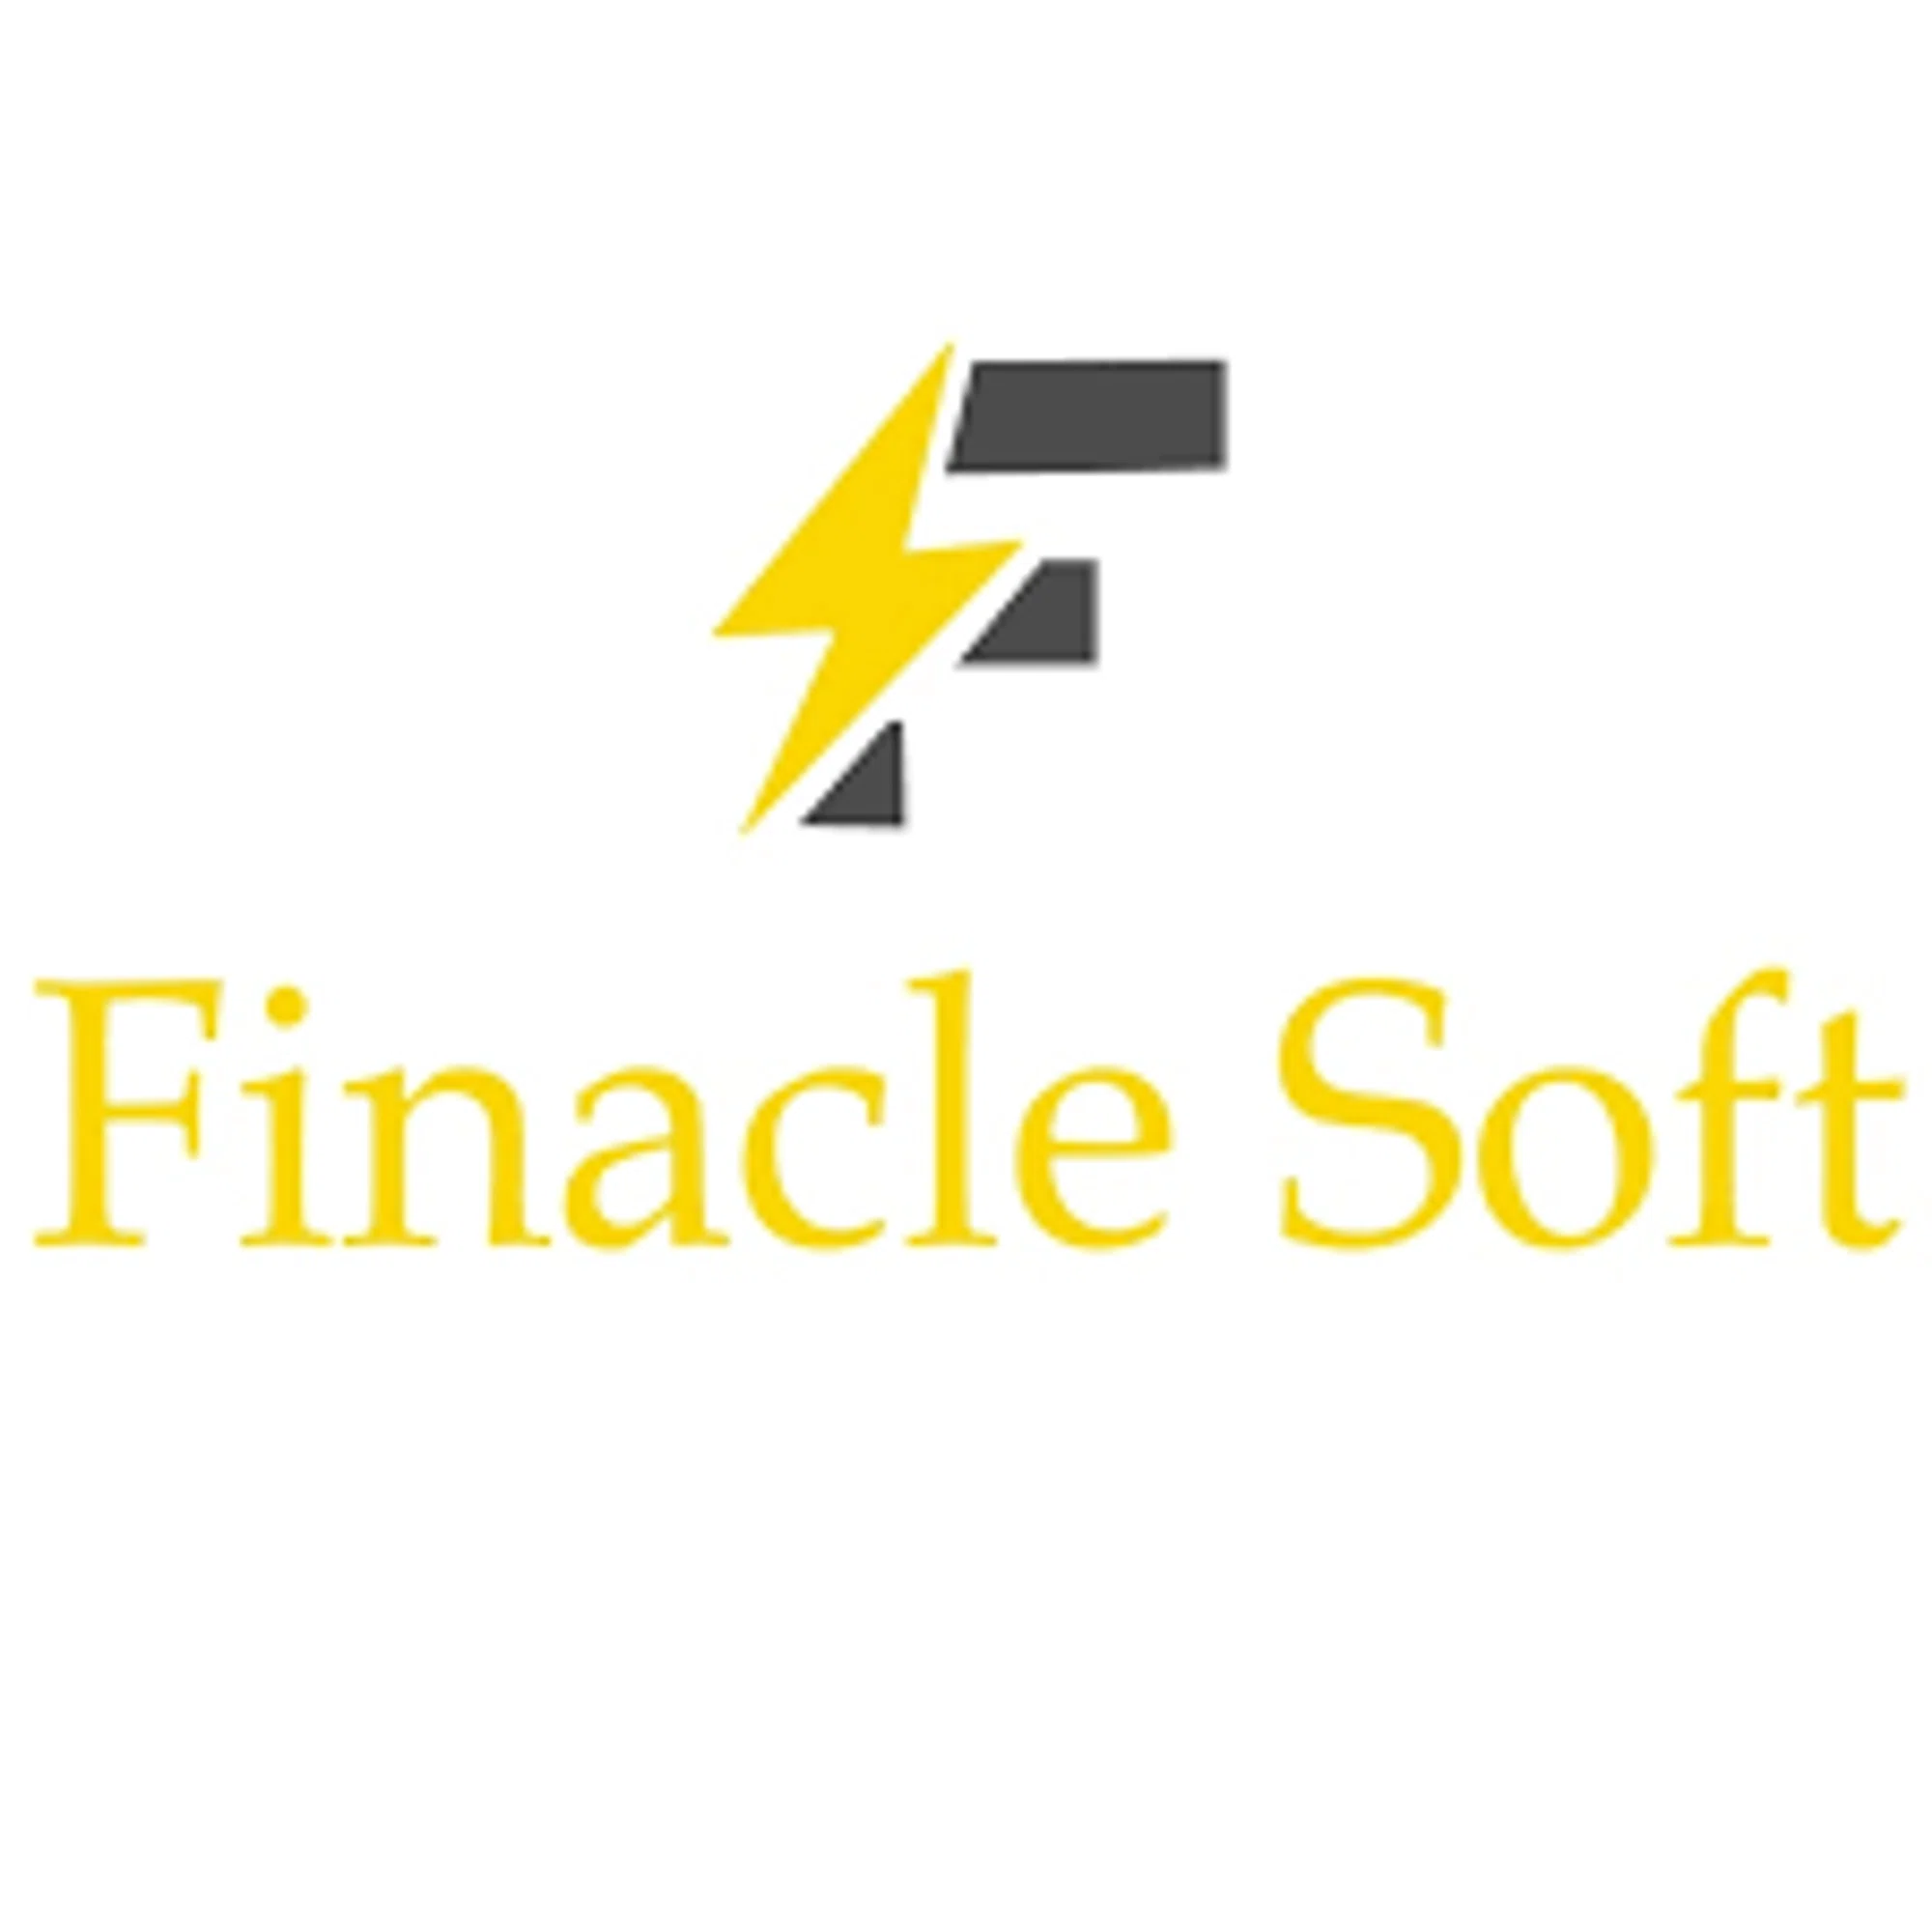 Finacle Soft Inc.